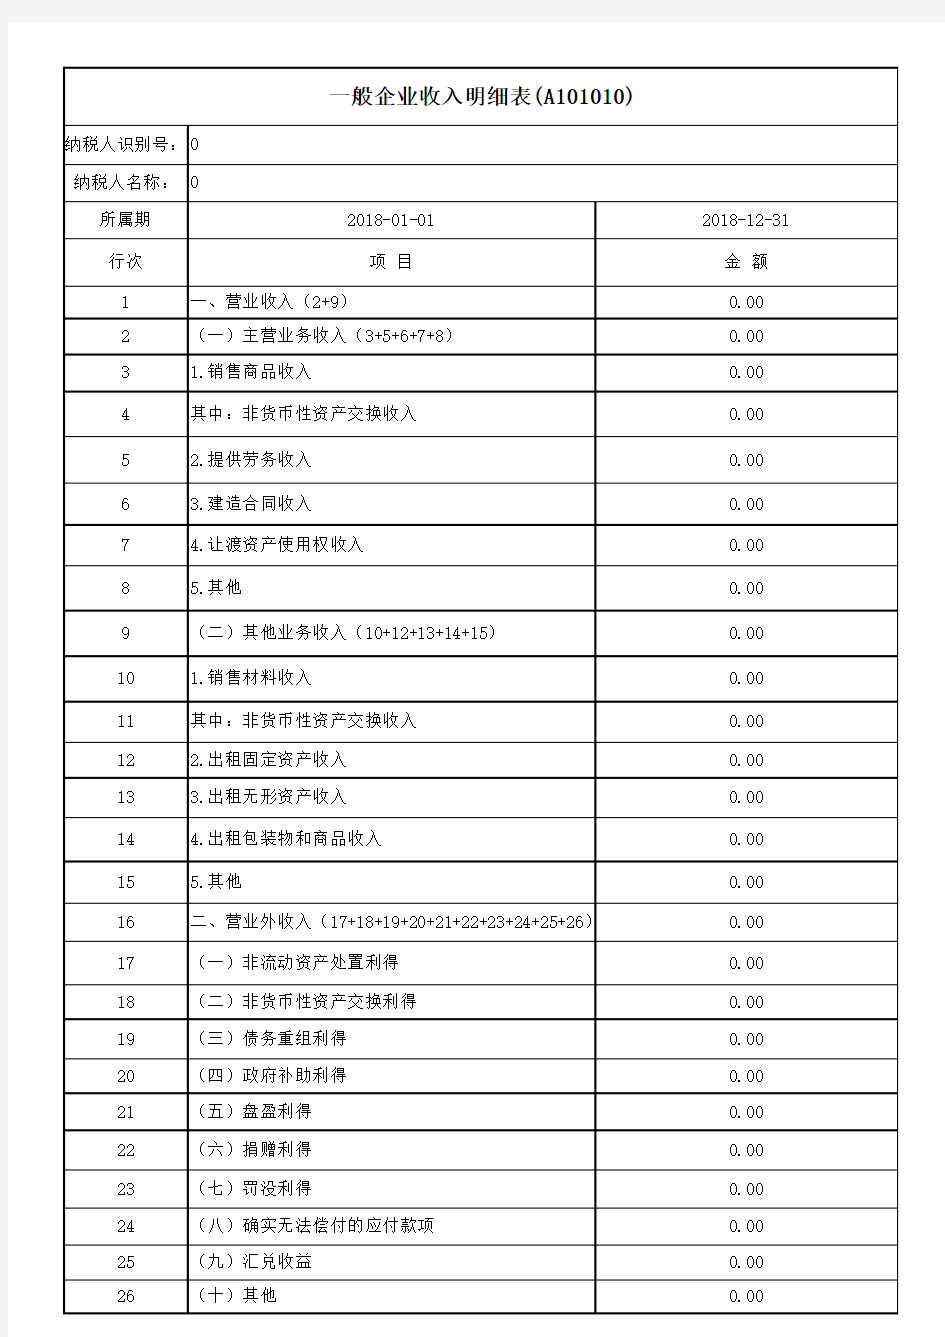 《2020年标准版》中华人民共和国企业所得税年度纳税申报表(A类,2017年版)